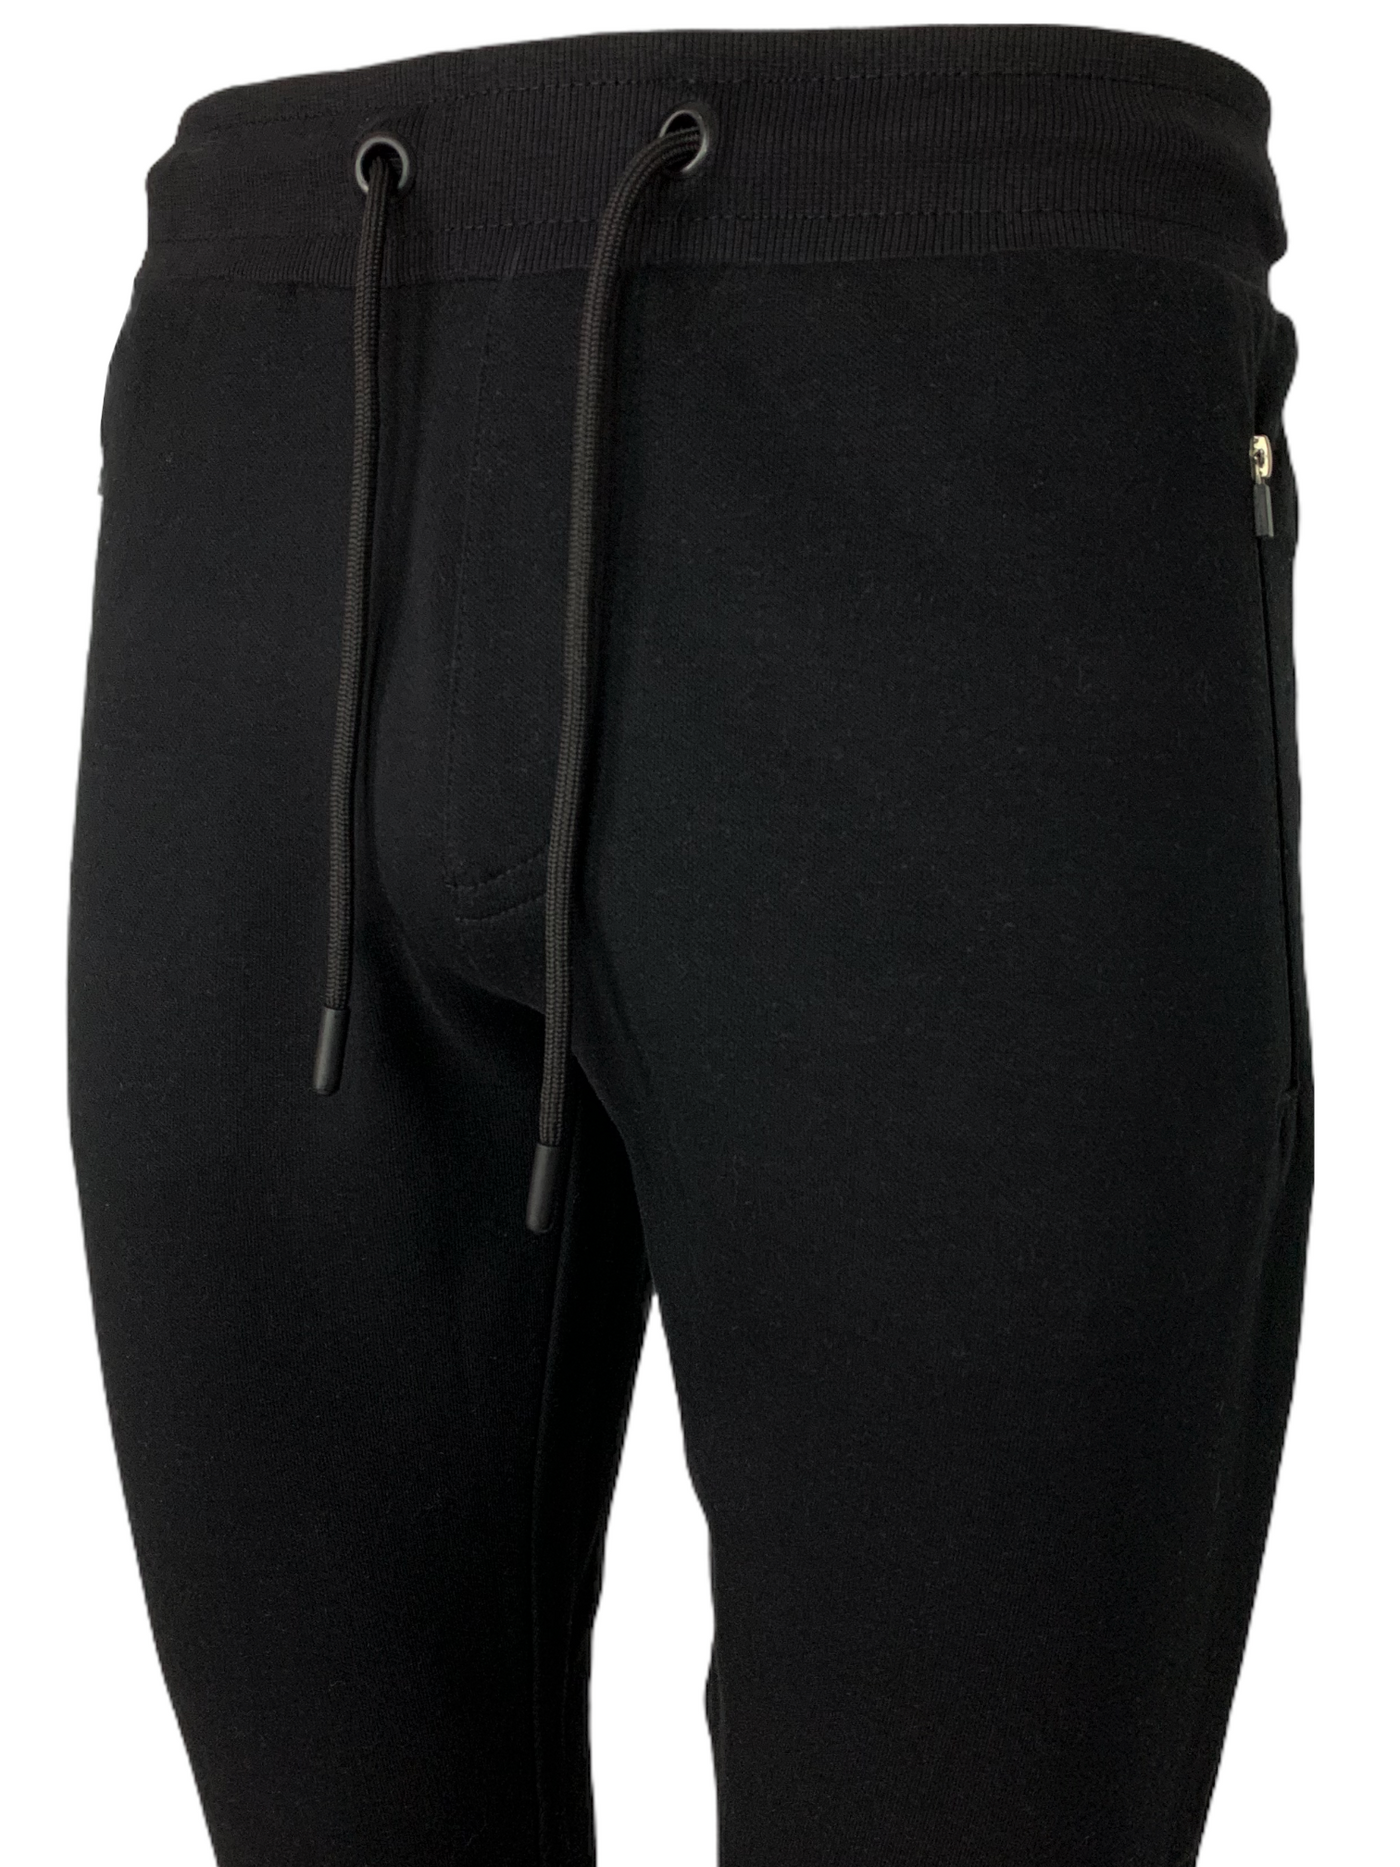 Pantalon jogging noir coupe ajustée